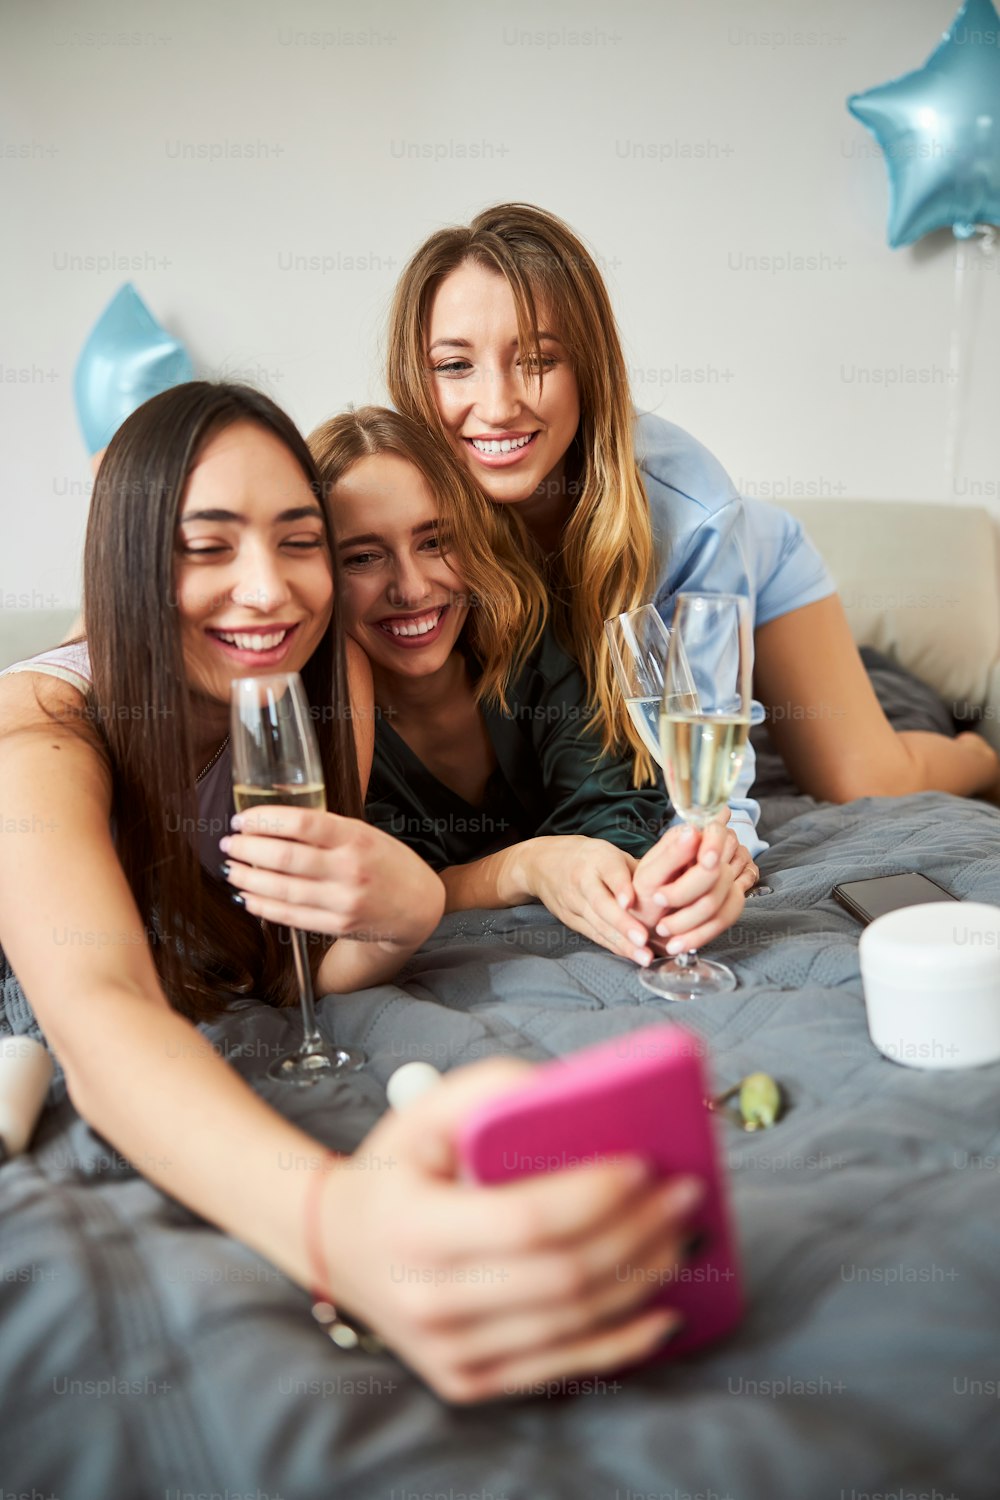 Gesellschaft von drei fröhlichen kaukasischen Frauen mit Gläsern Sekt, die Selfies im Bett machen